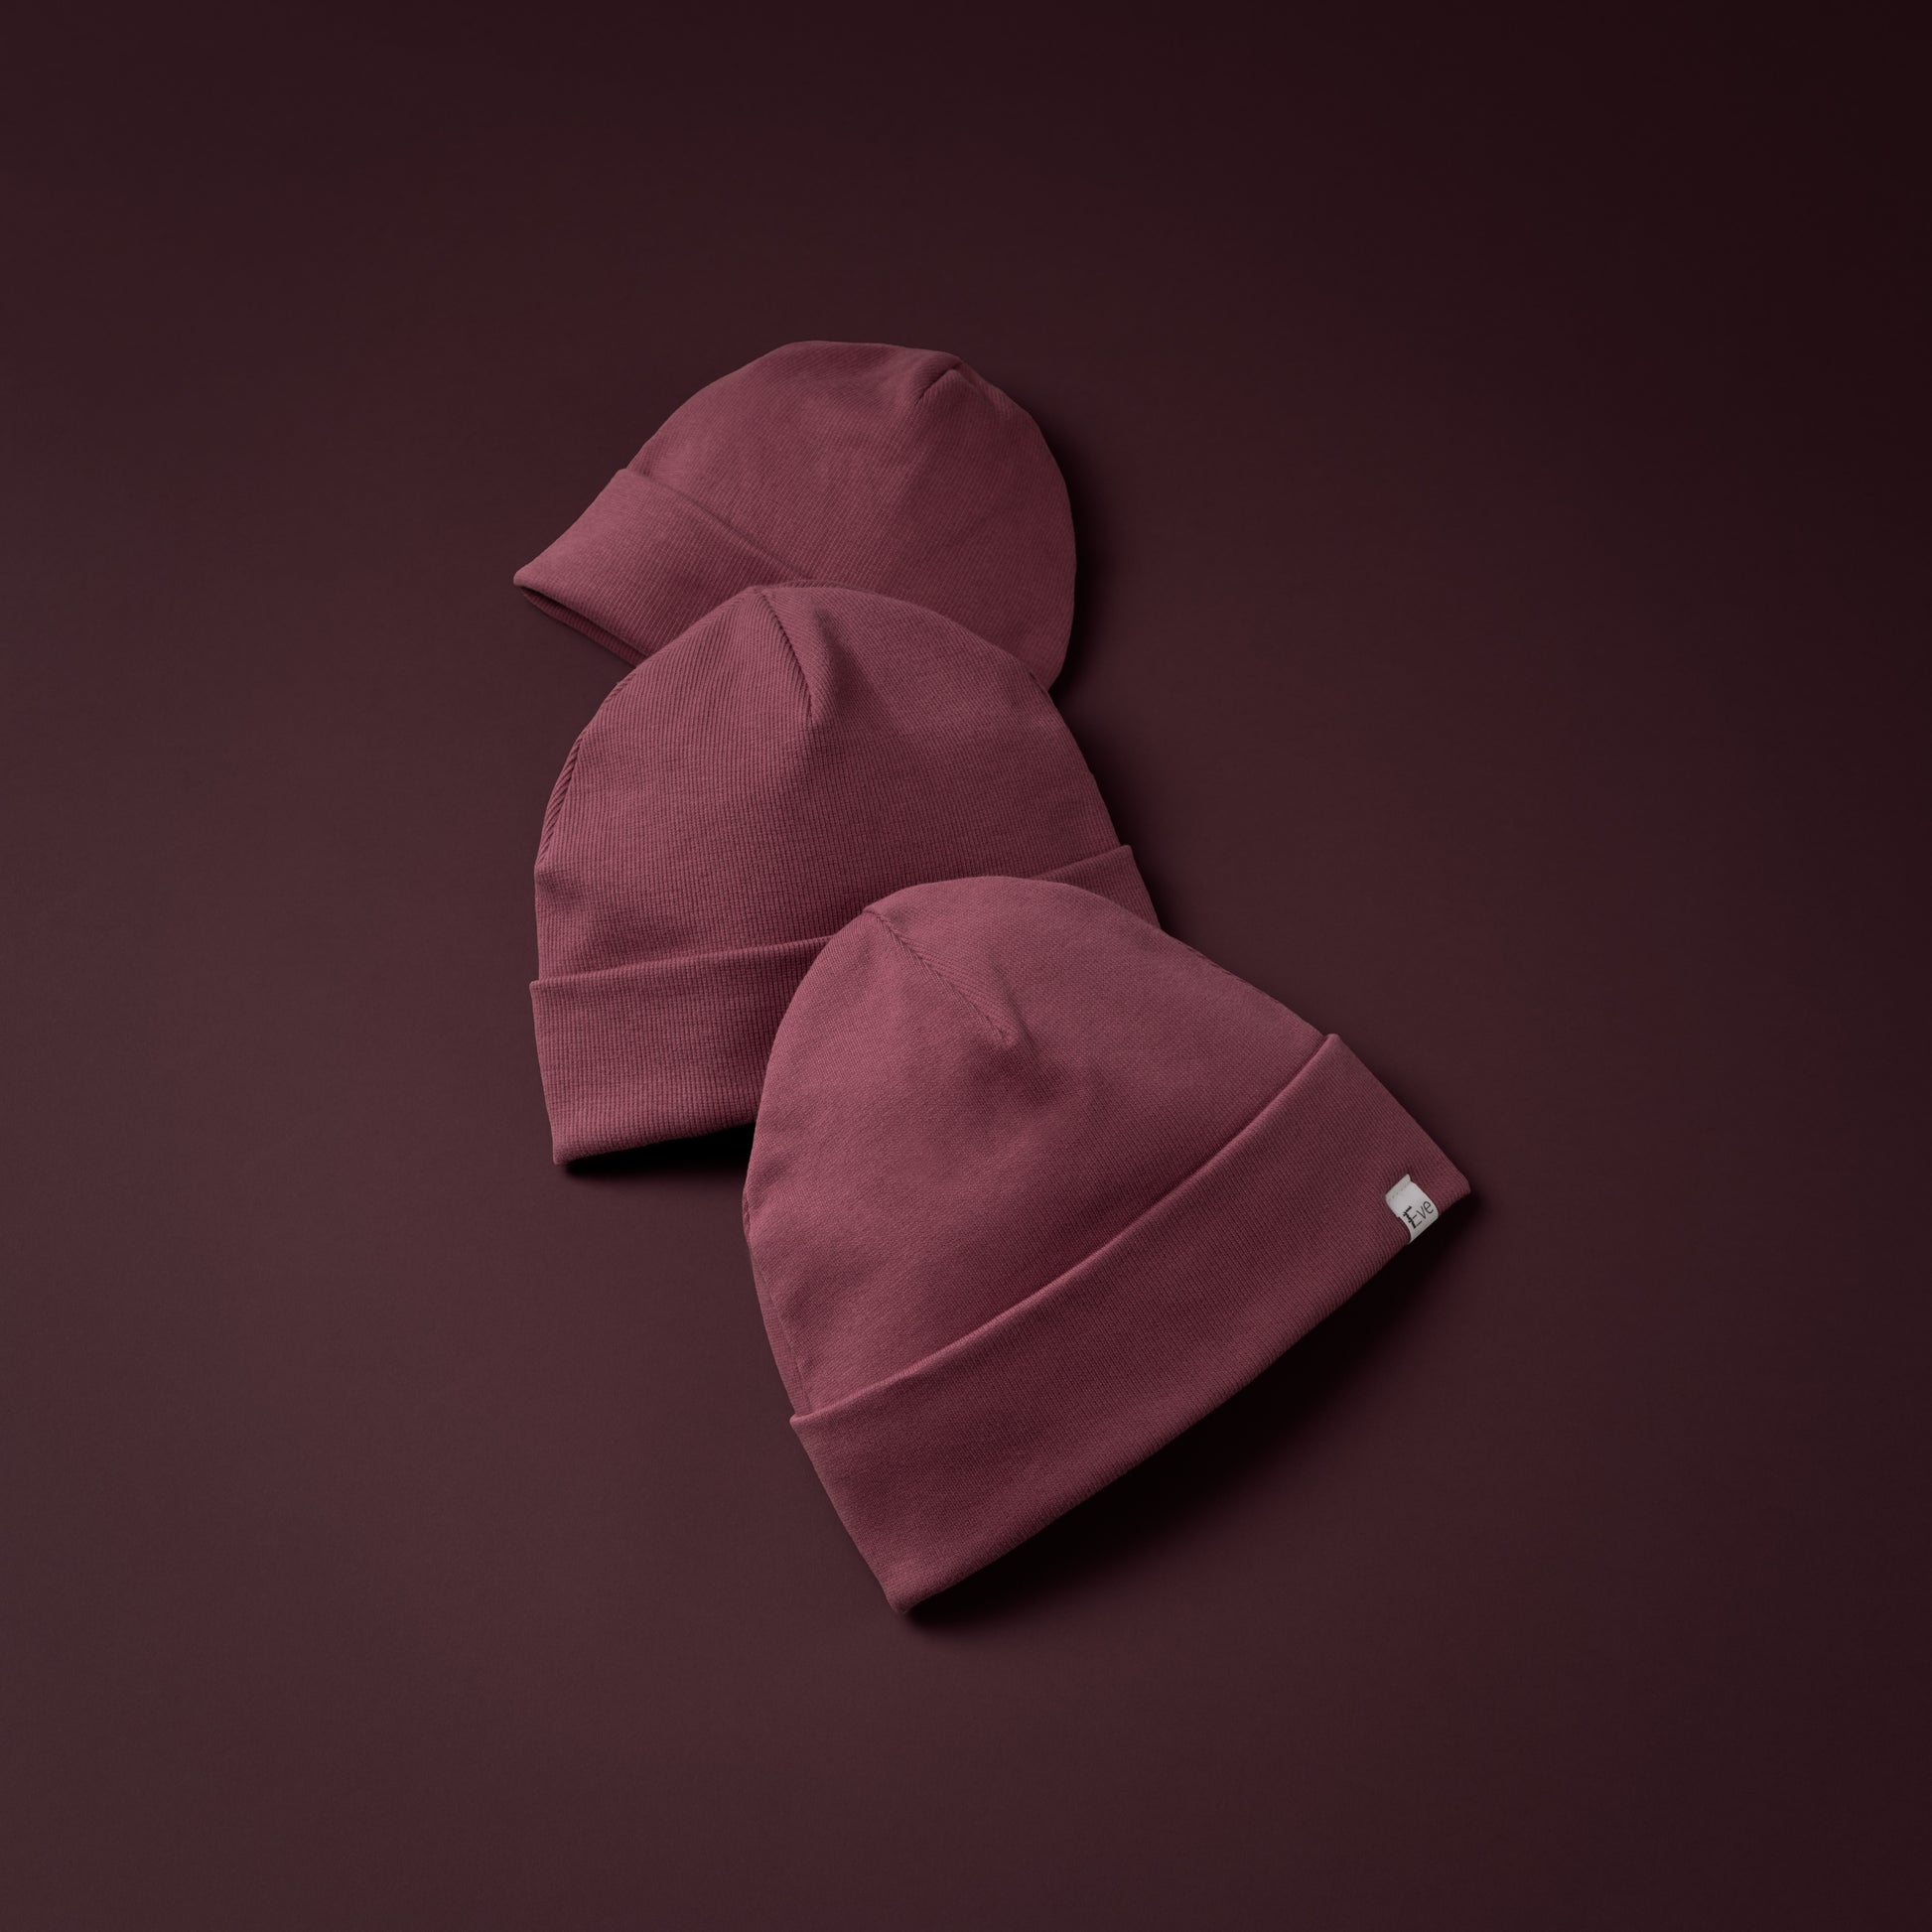 Beanie Haube Mütze Purple Violett Rot 3 Größen klein mittel groß